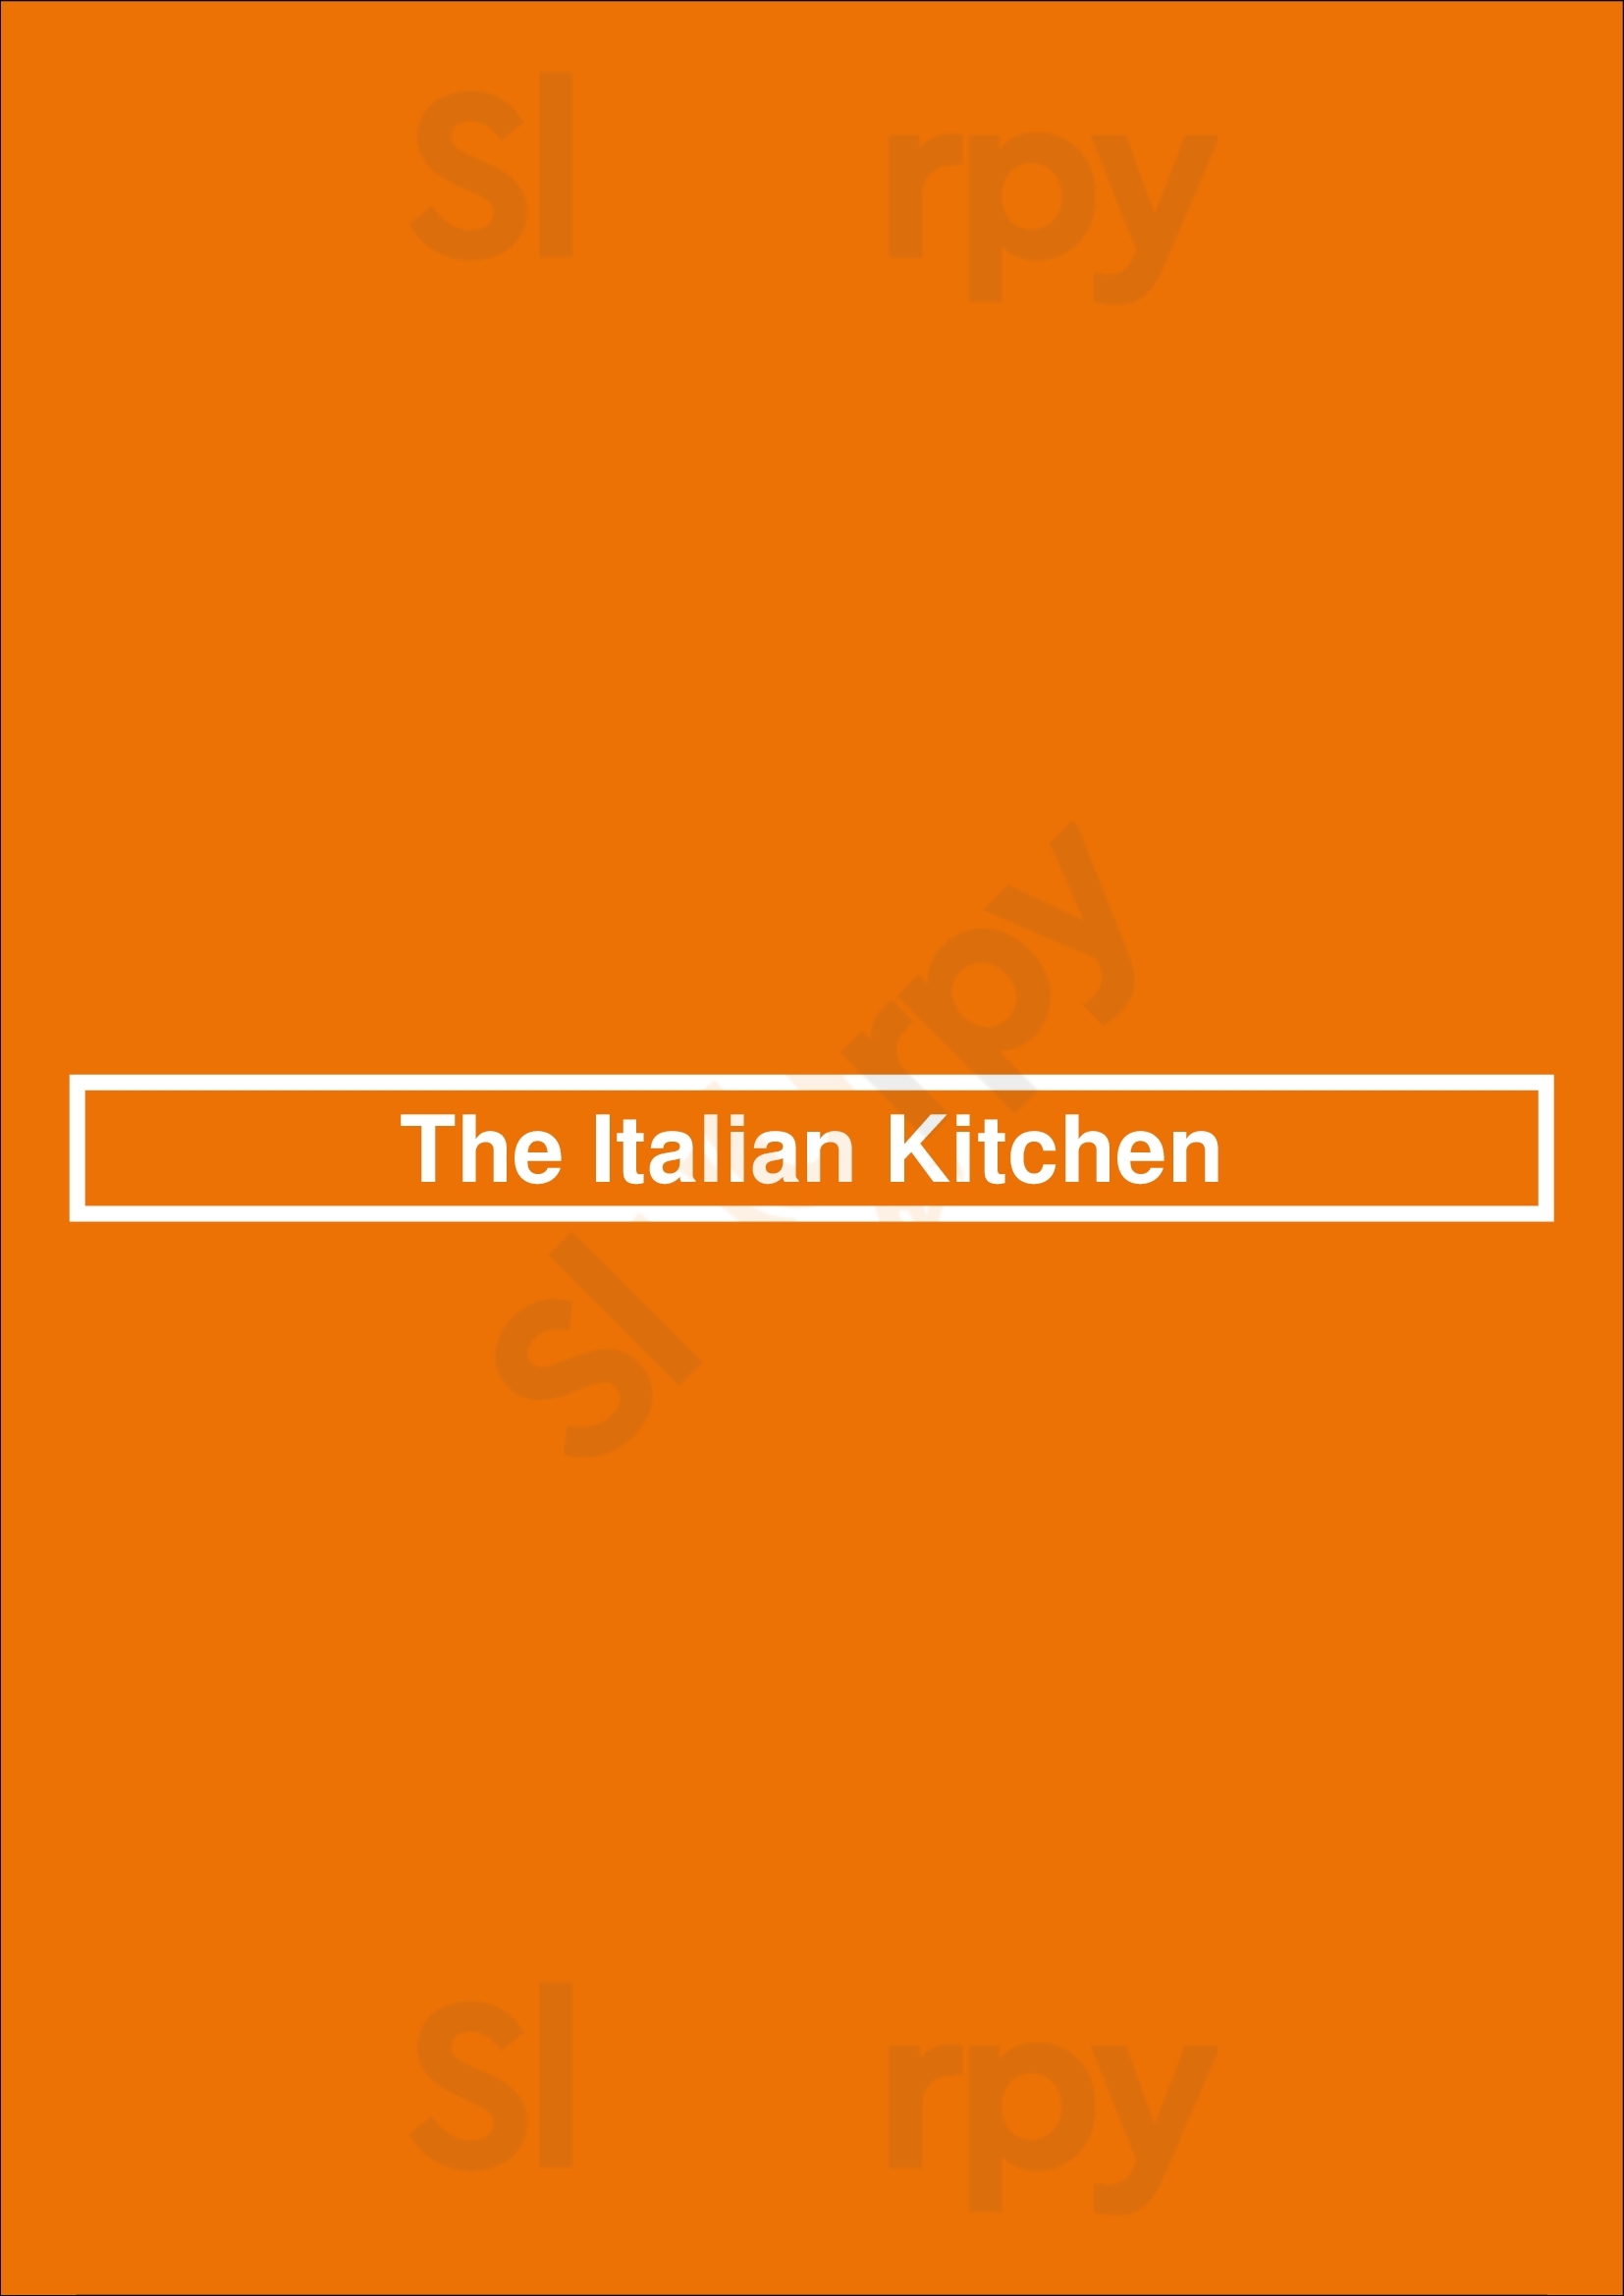 The Italian Kitchen Nashville Menu - 1